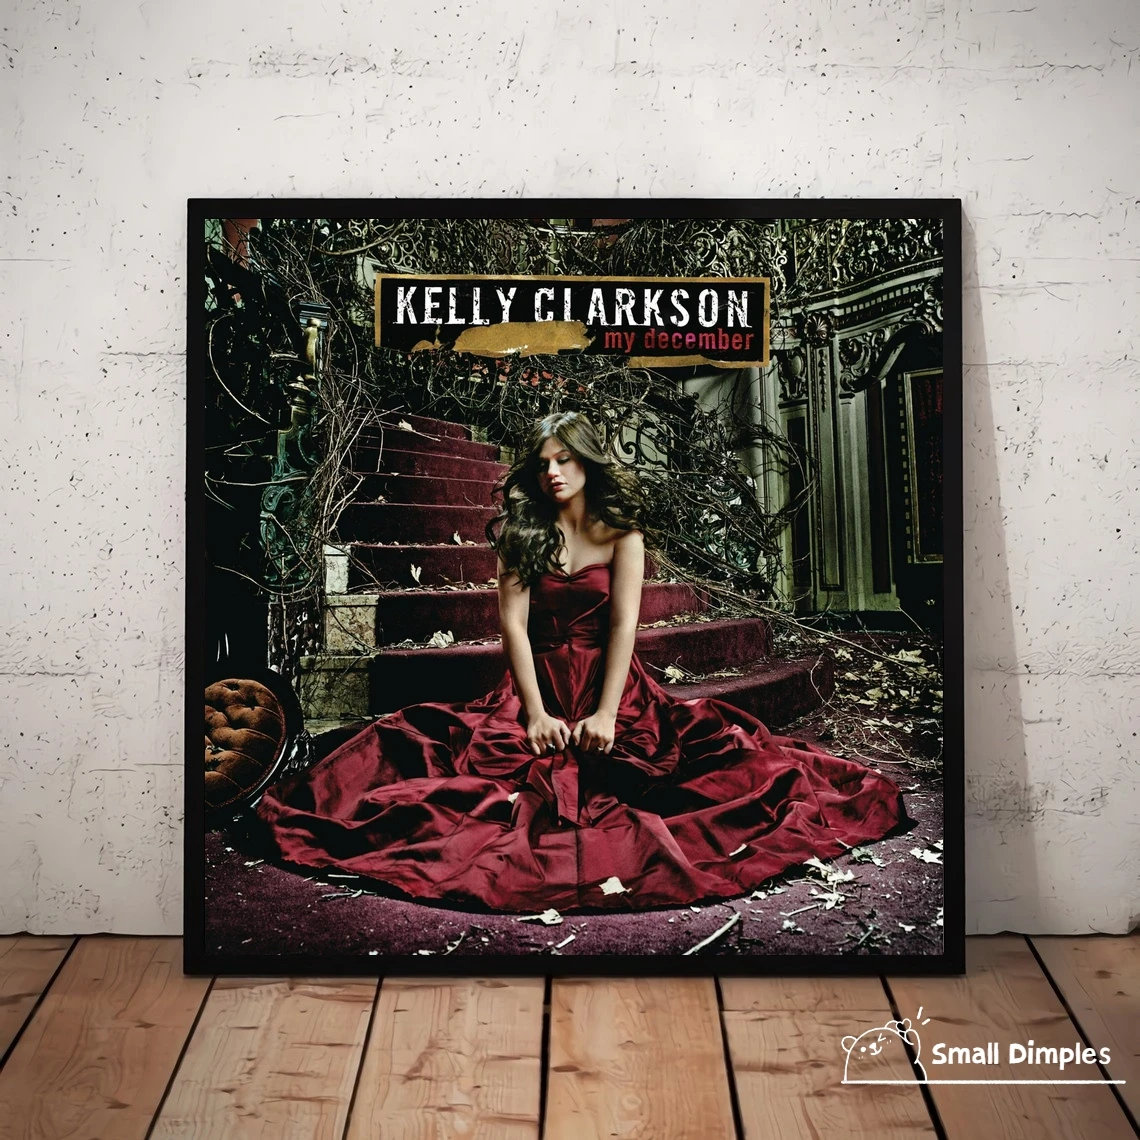 

Kelly Clarkson, Обложка альбома «Мой декабрь музыки», плакат, холст, Художественная печать, украшение для дома, настенная живопись (без рамки)